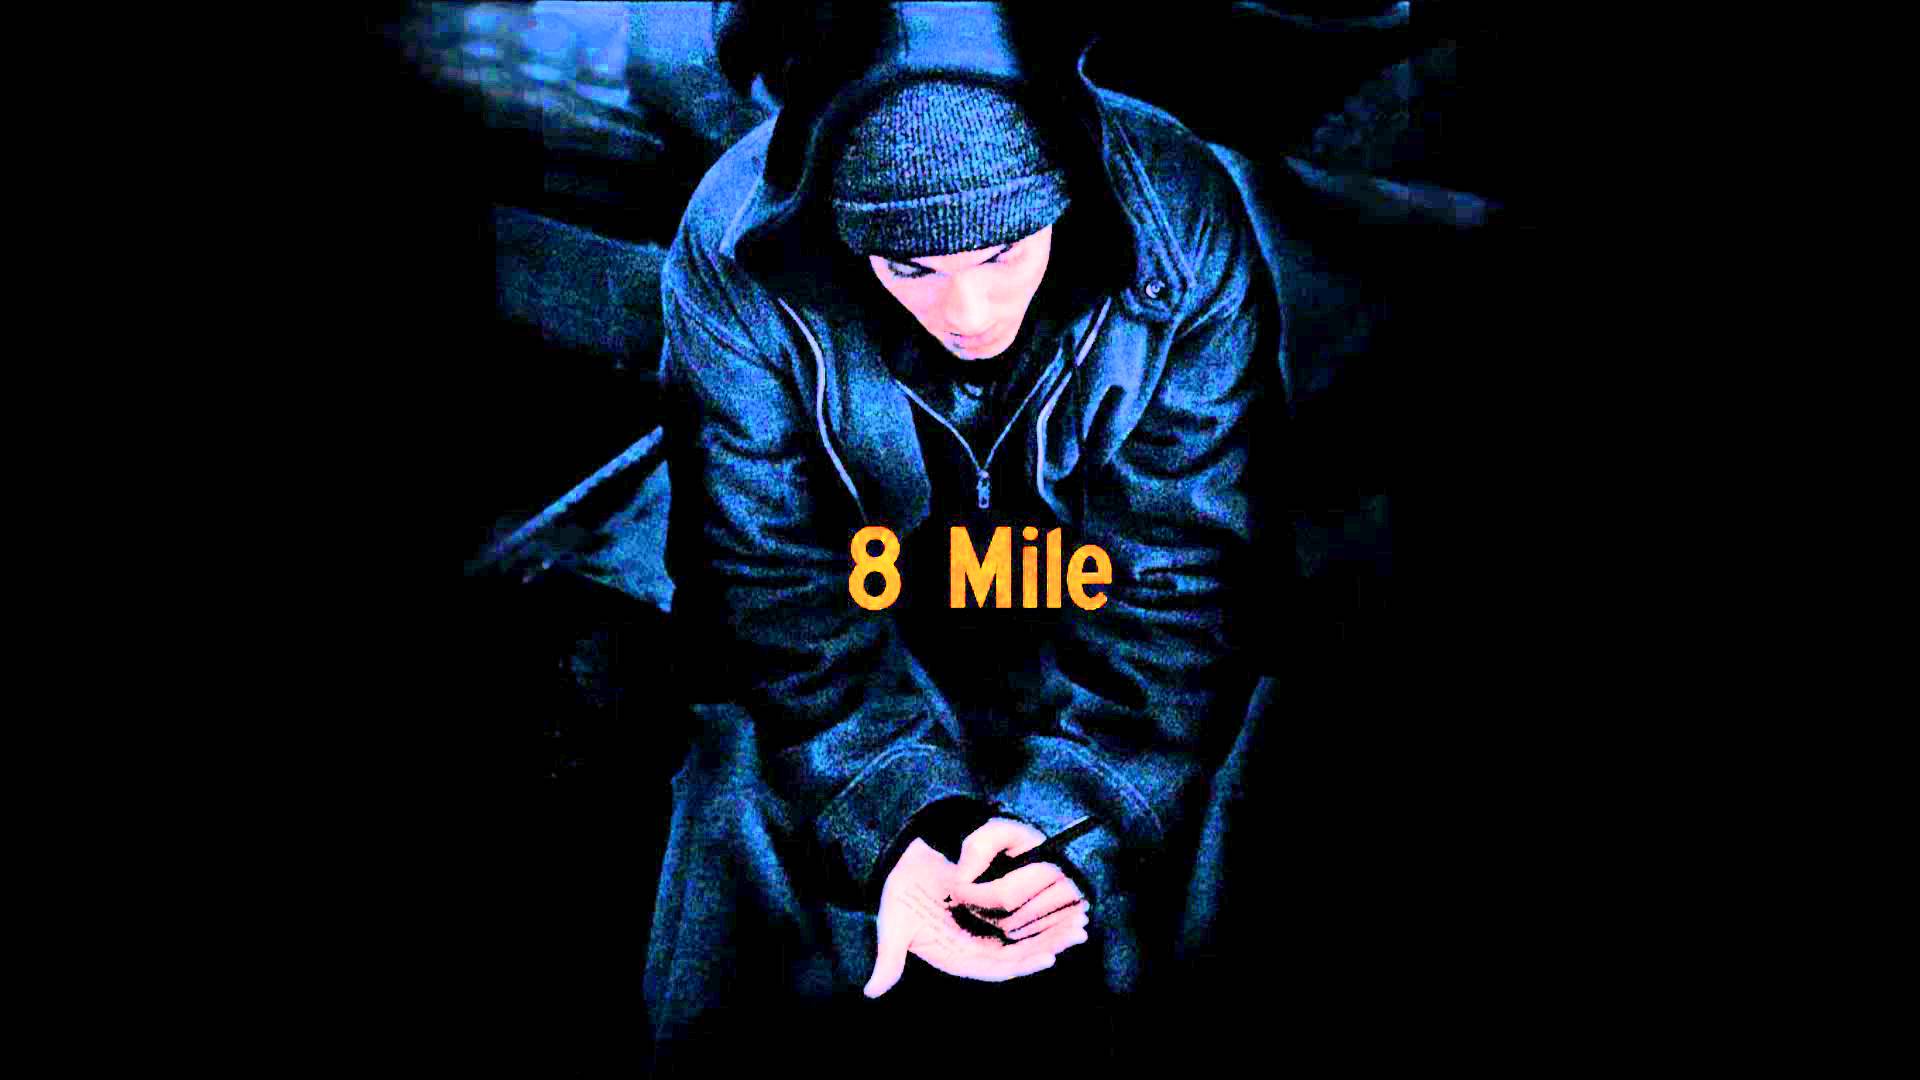 Eminem Mile Wallpaper Top Background